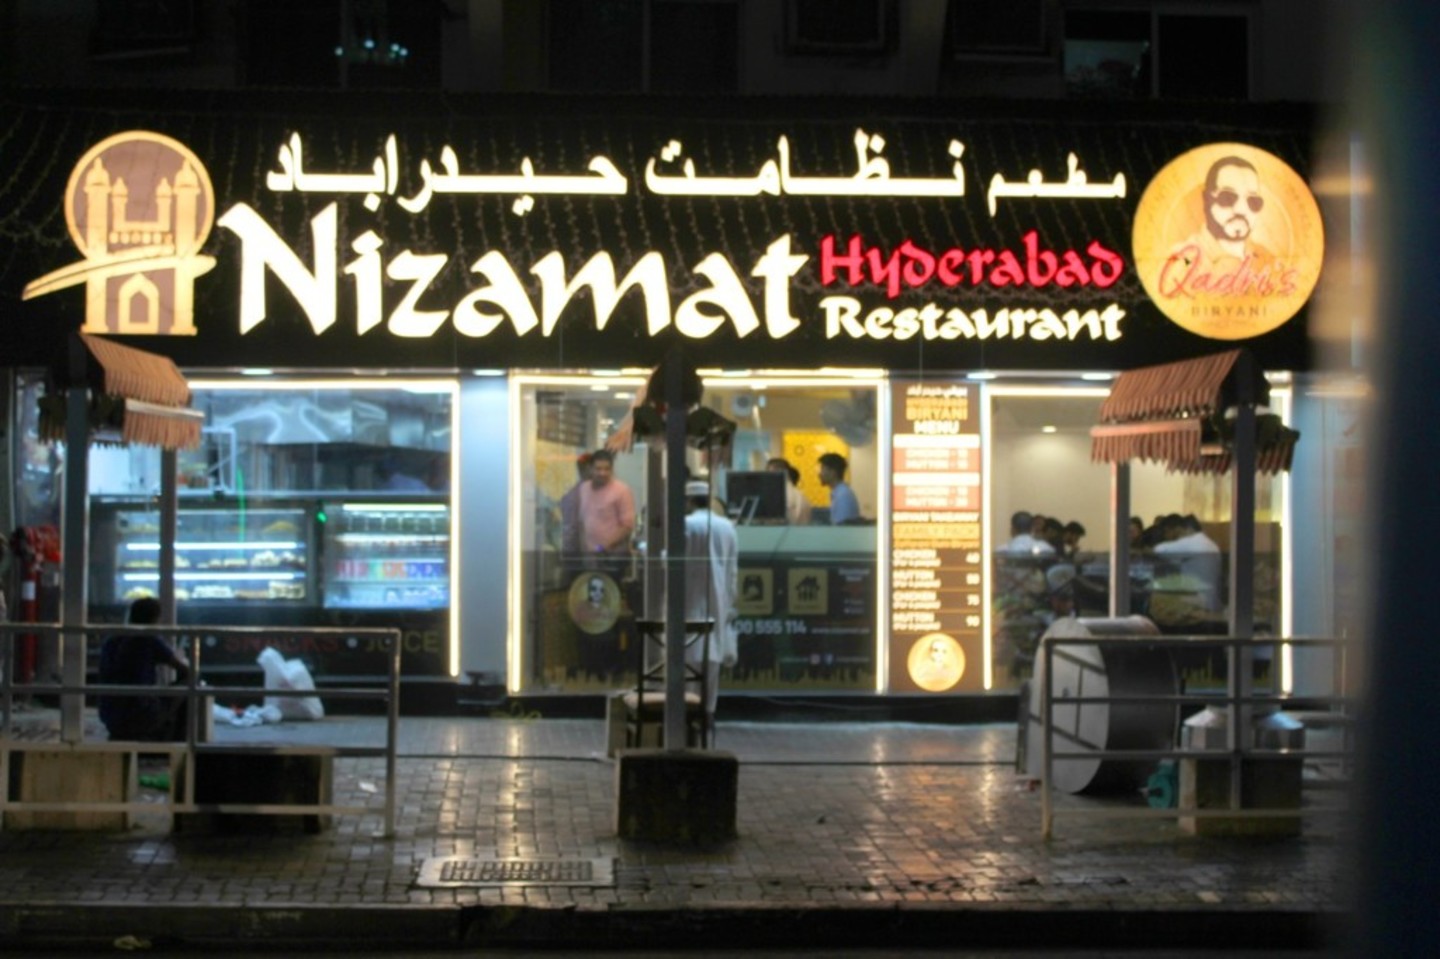 nizamat hyderabad restaurant: A Symphony of Flavors Awaits you